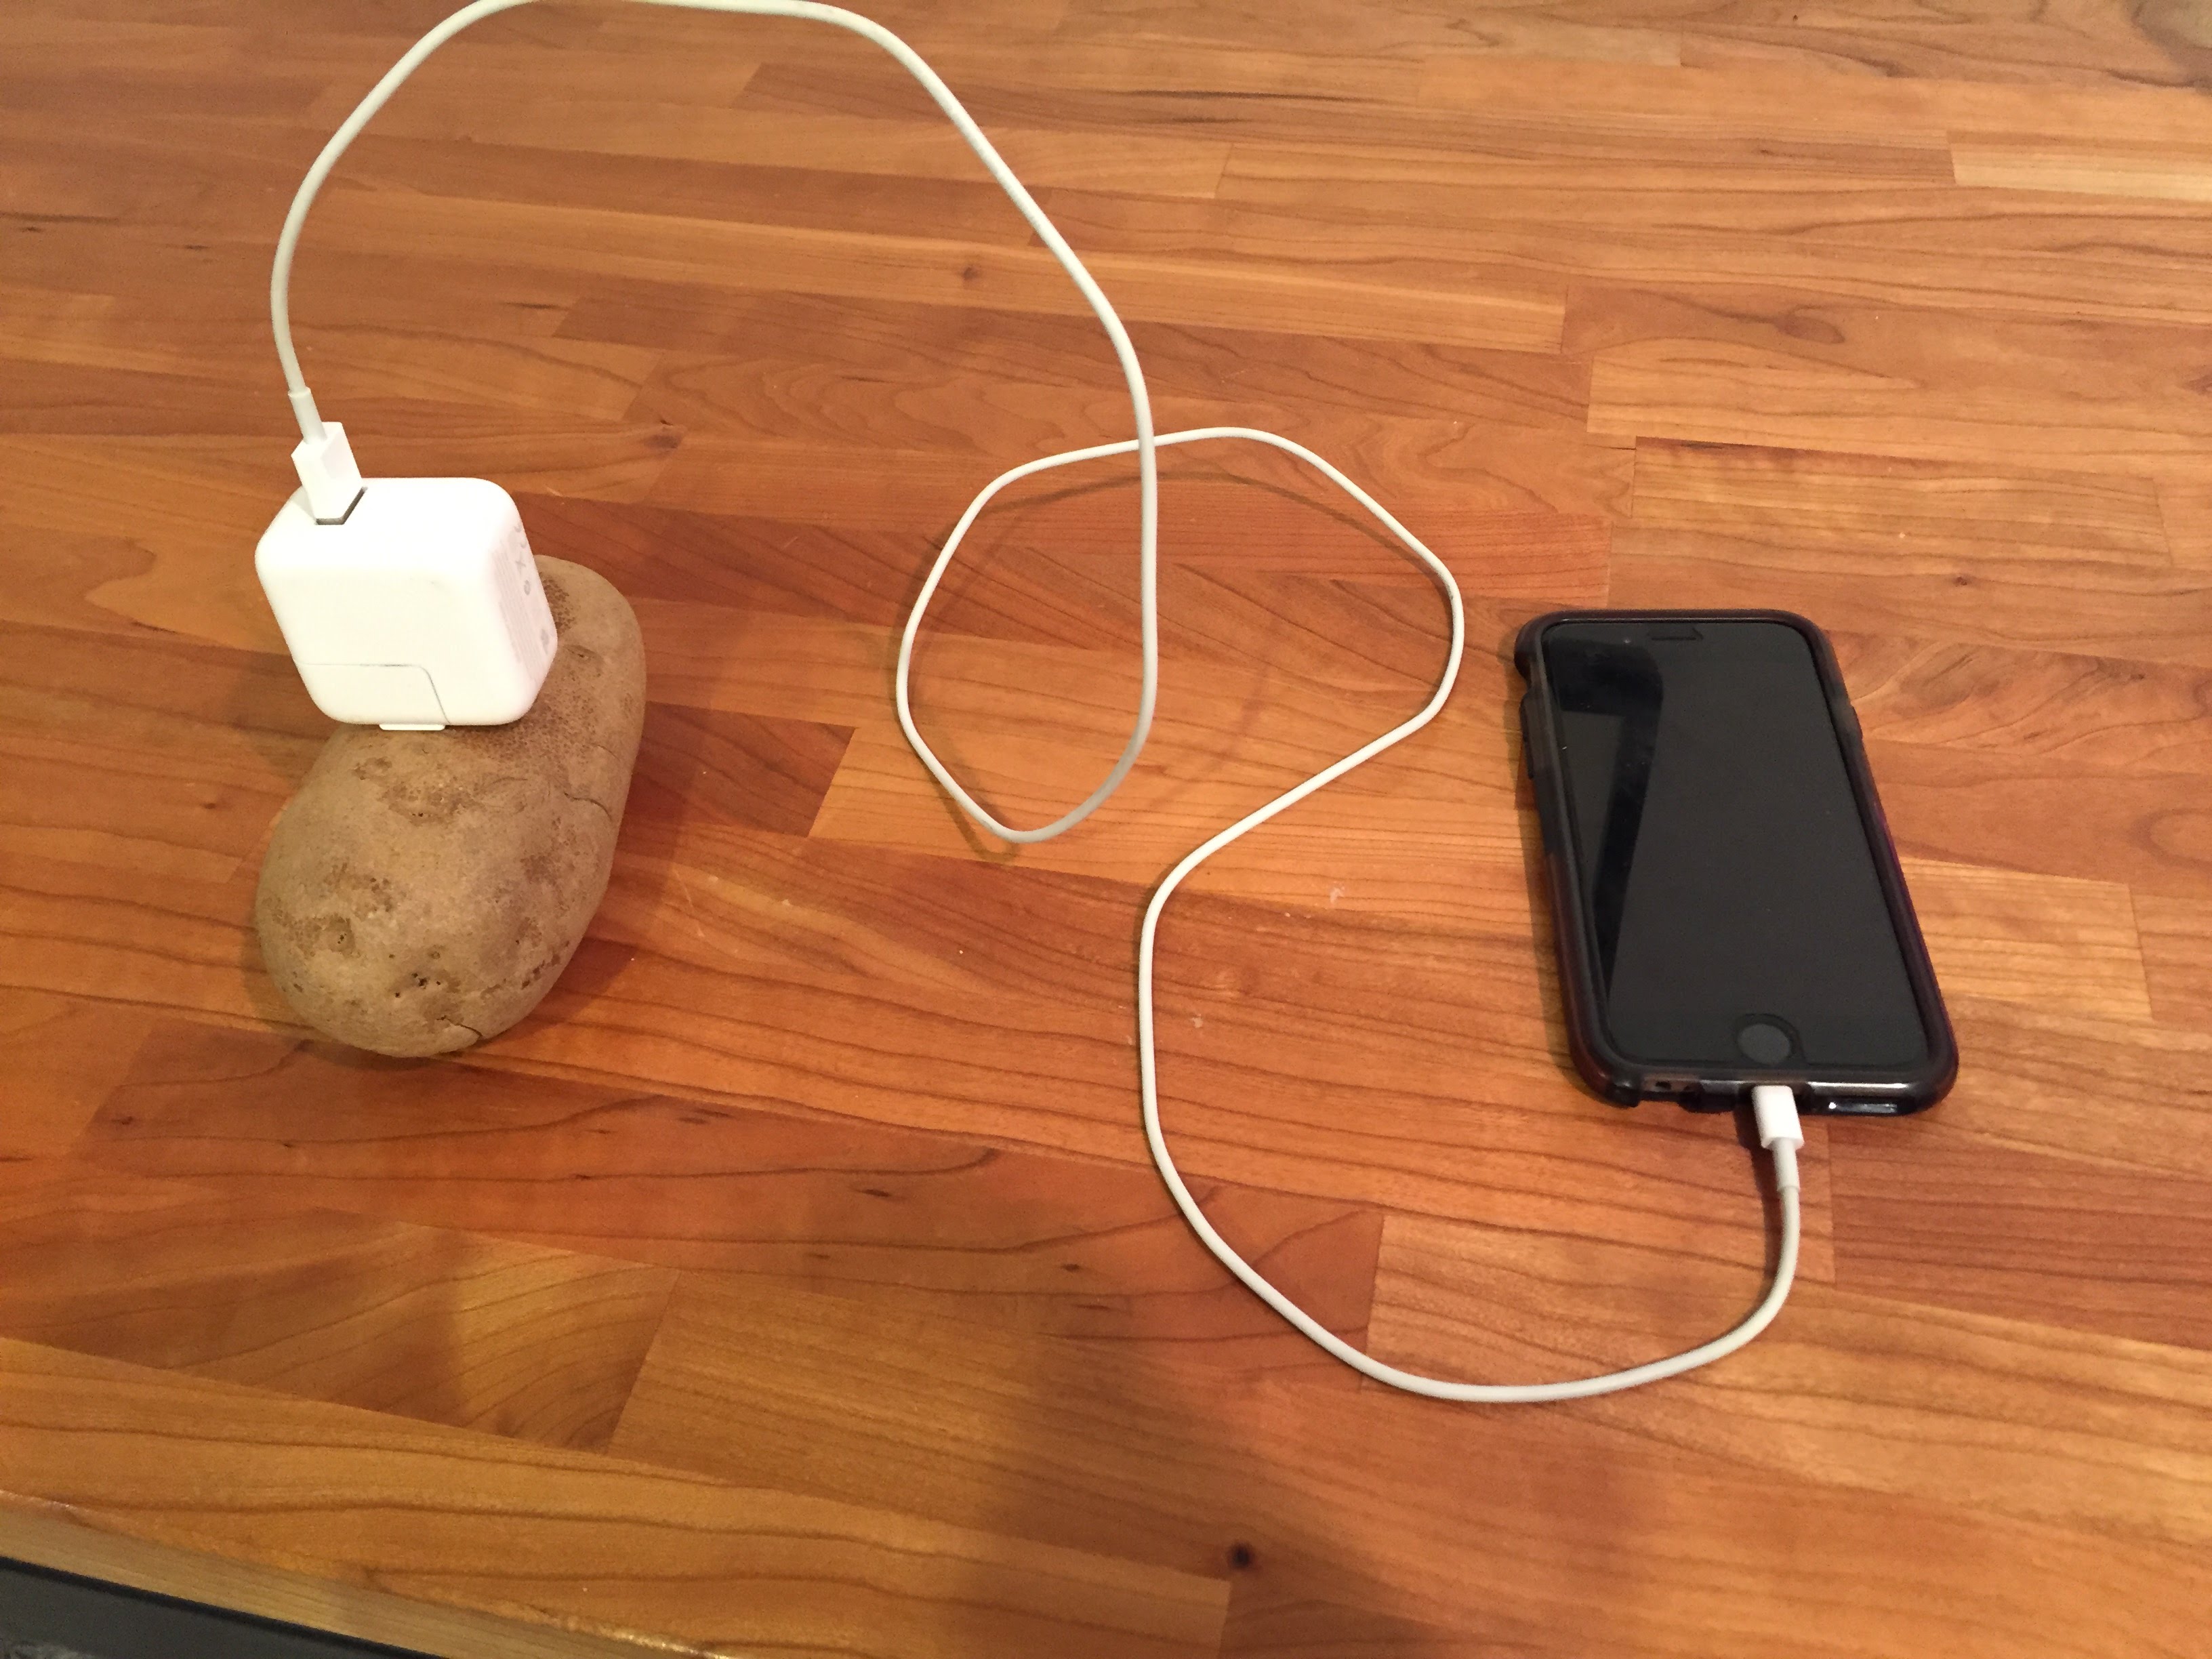 Простейшая зарядка телефона. Зарядка для телефона. Зарядка от картошки. Зарядка из картошки для телефона. Зарядник телефона из картошки.